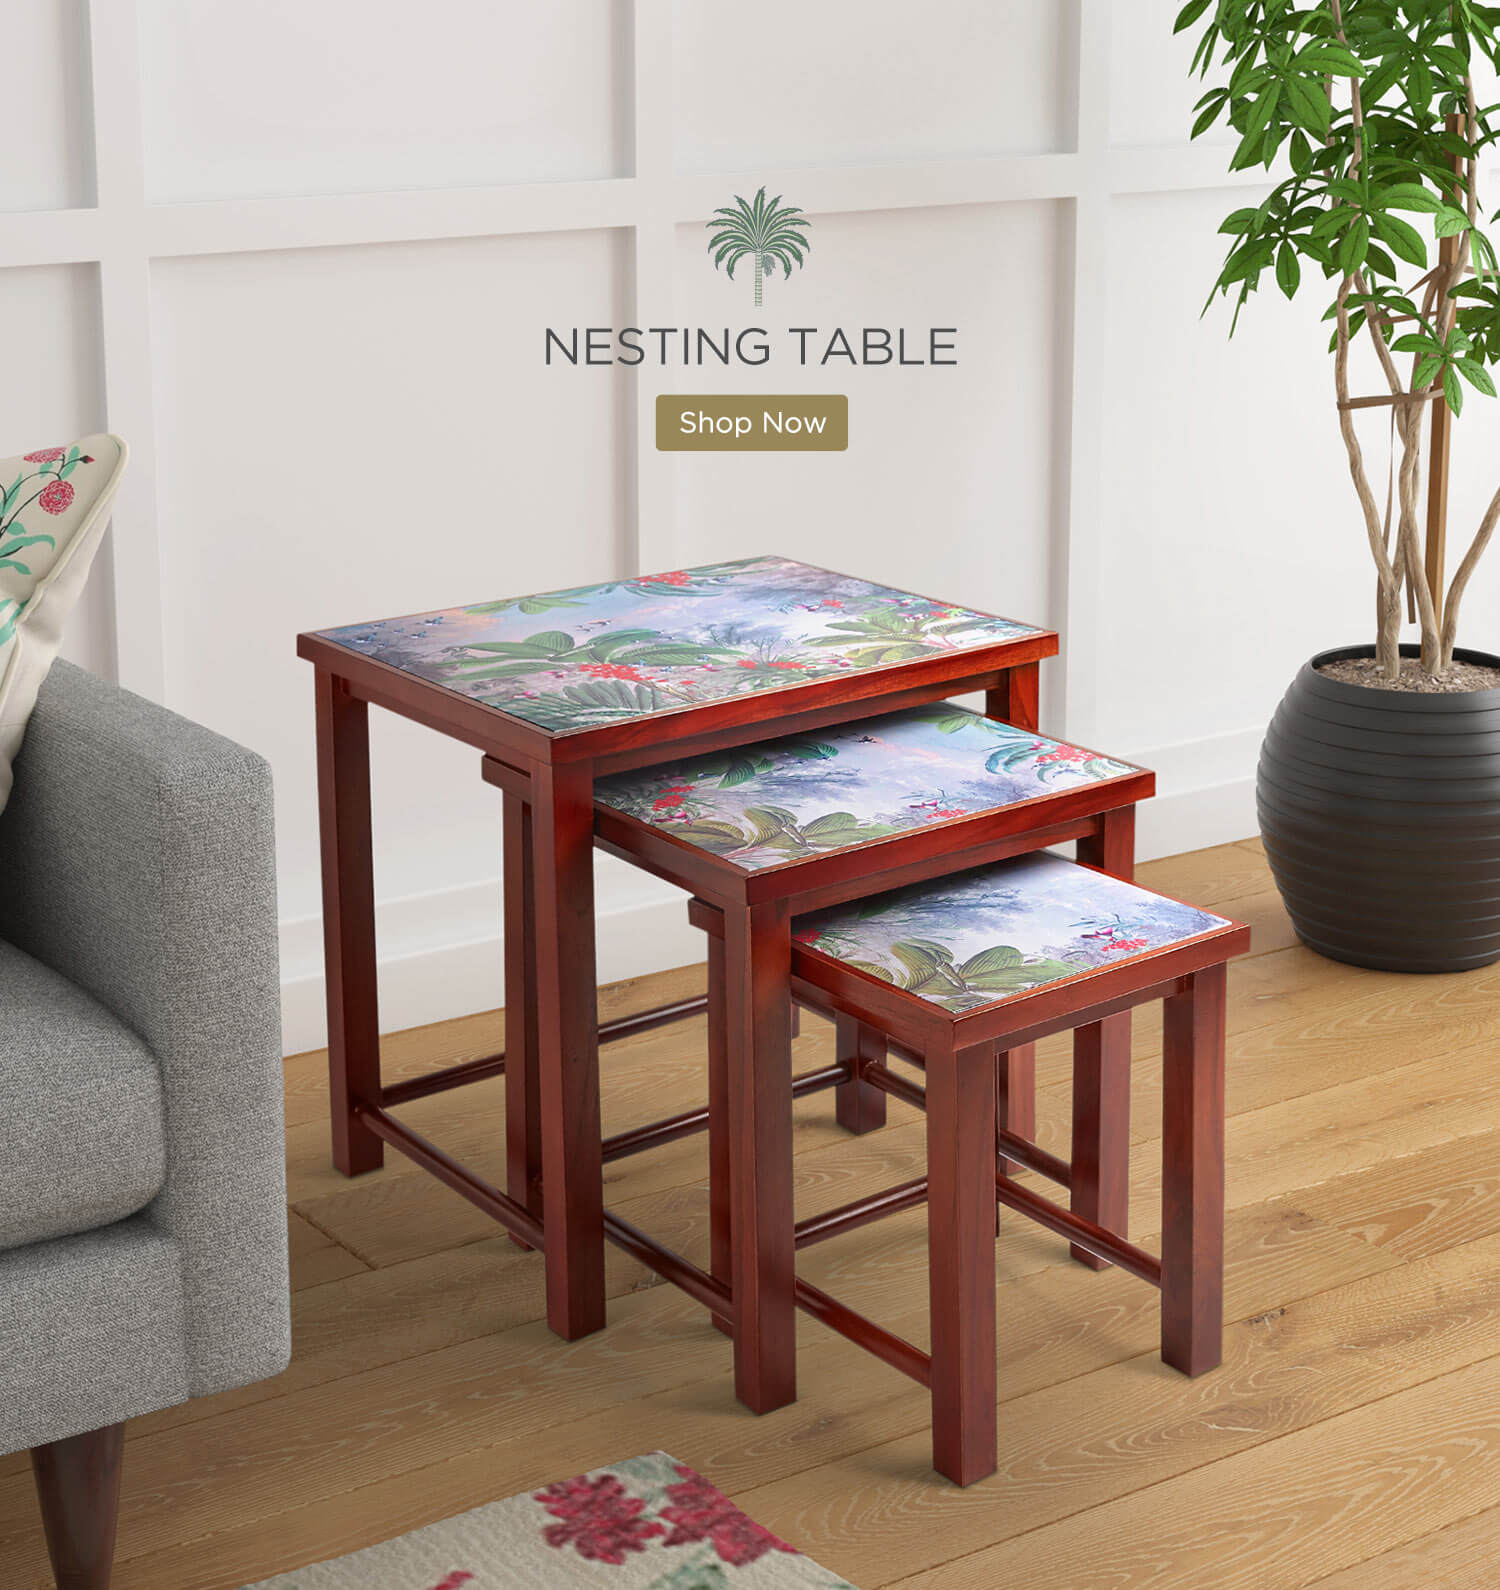 Buy Nesting Table Online